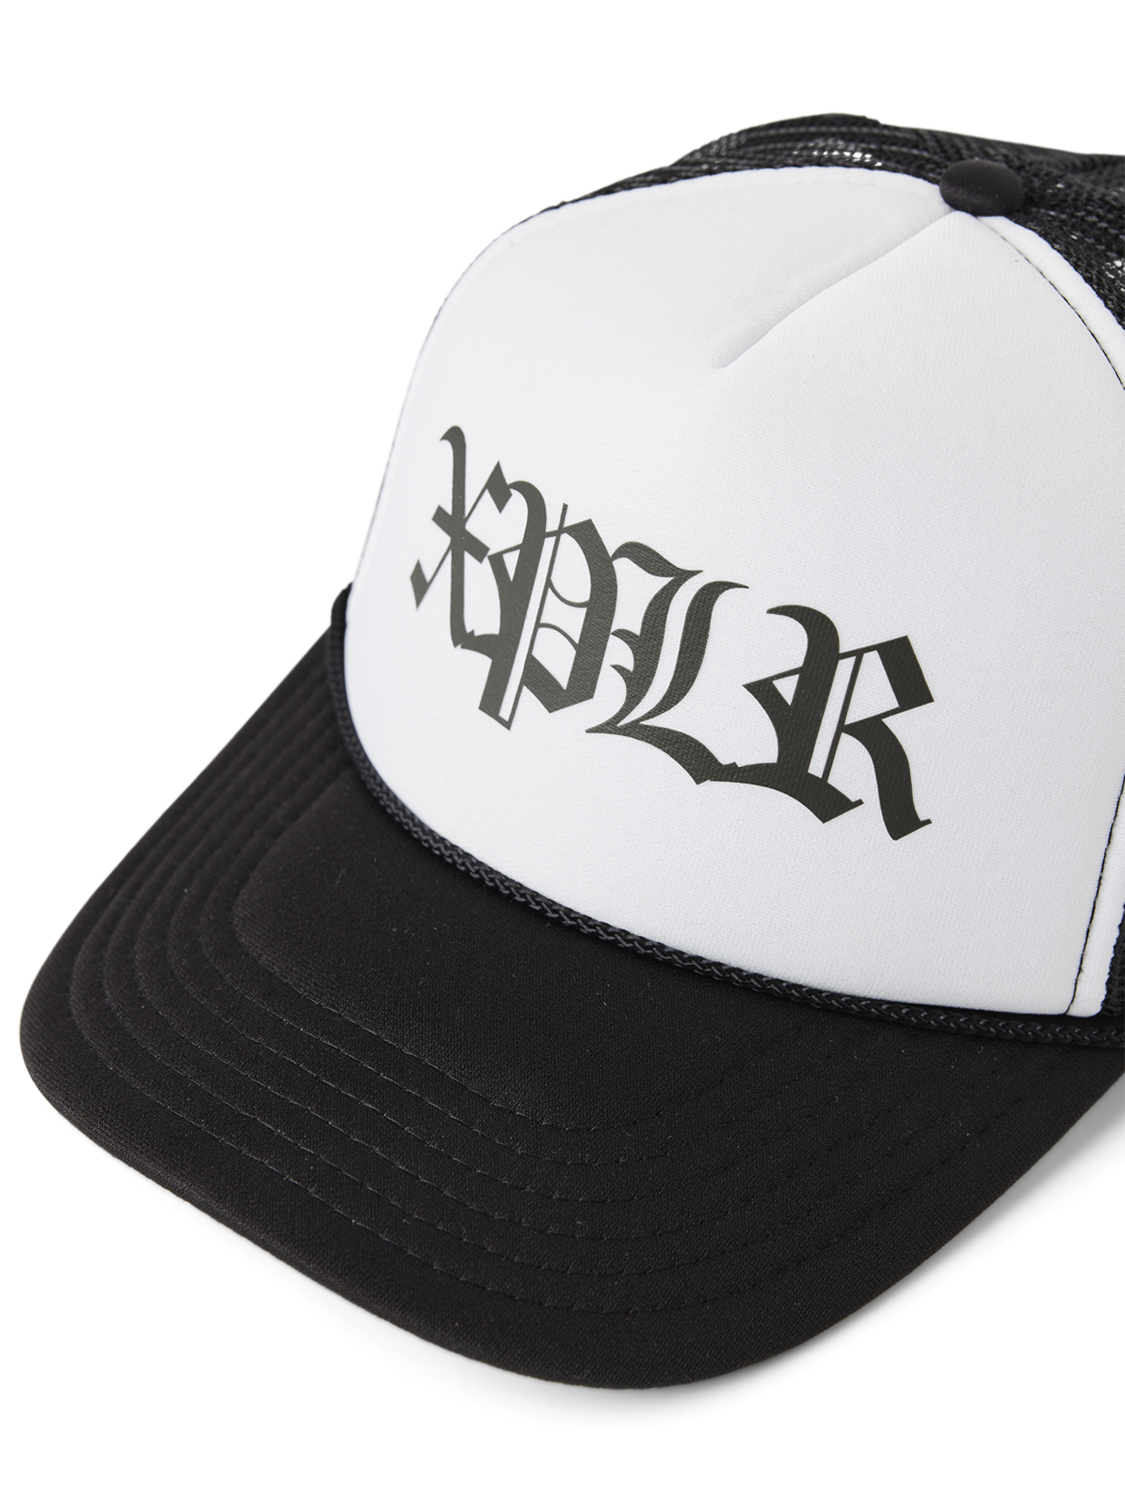 XPLR Forever Trucker Hat